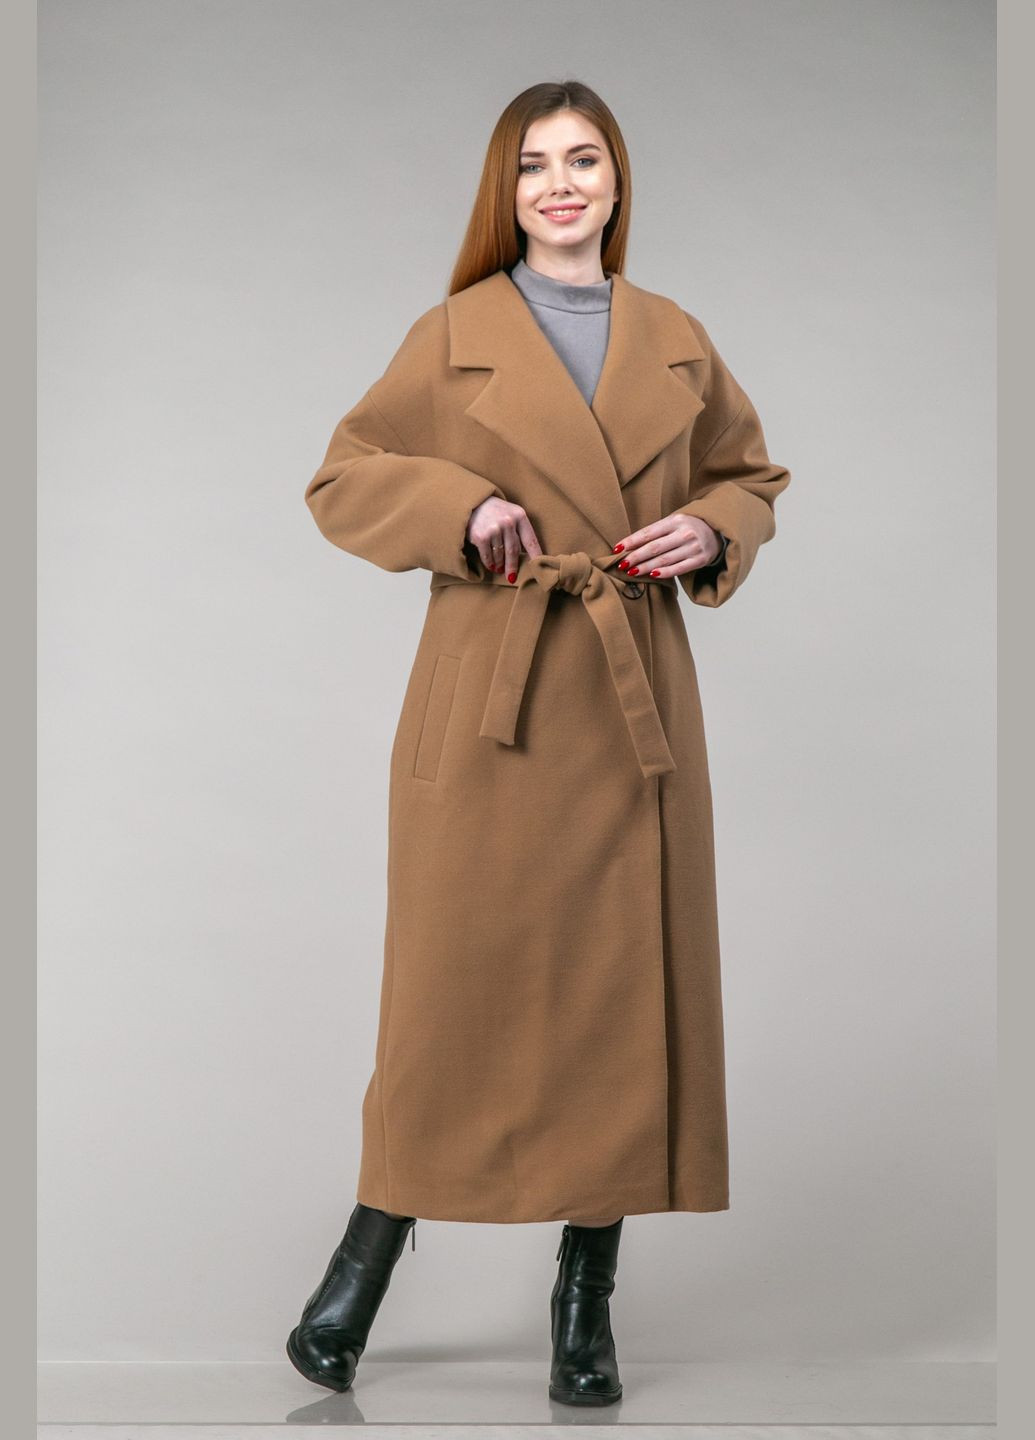 Коричневое зимнее Длинное классическое пальто из кашемира двубортное CHICLY